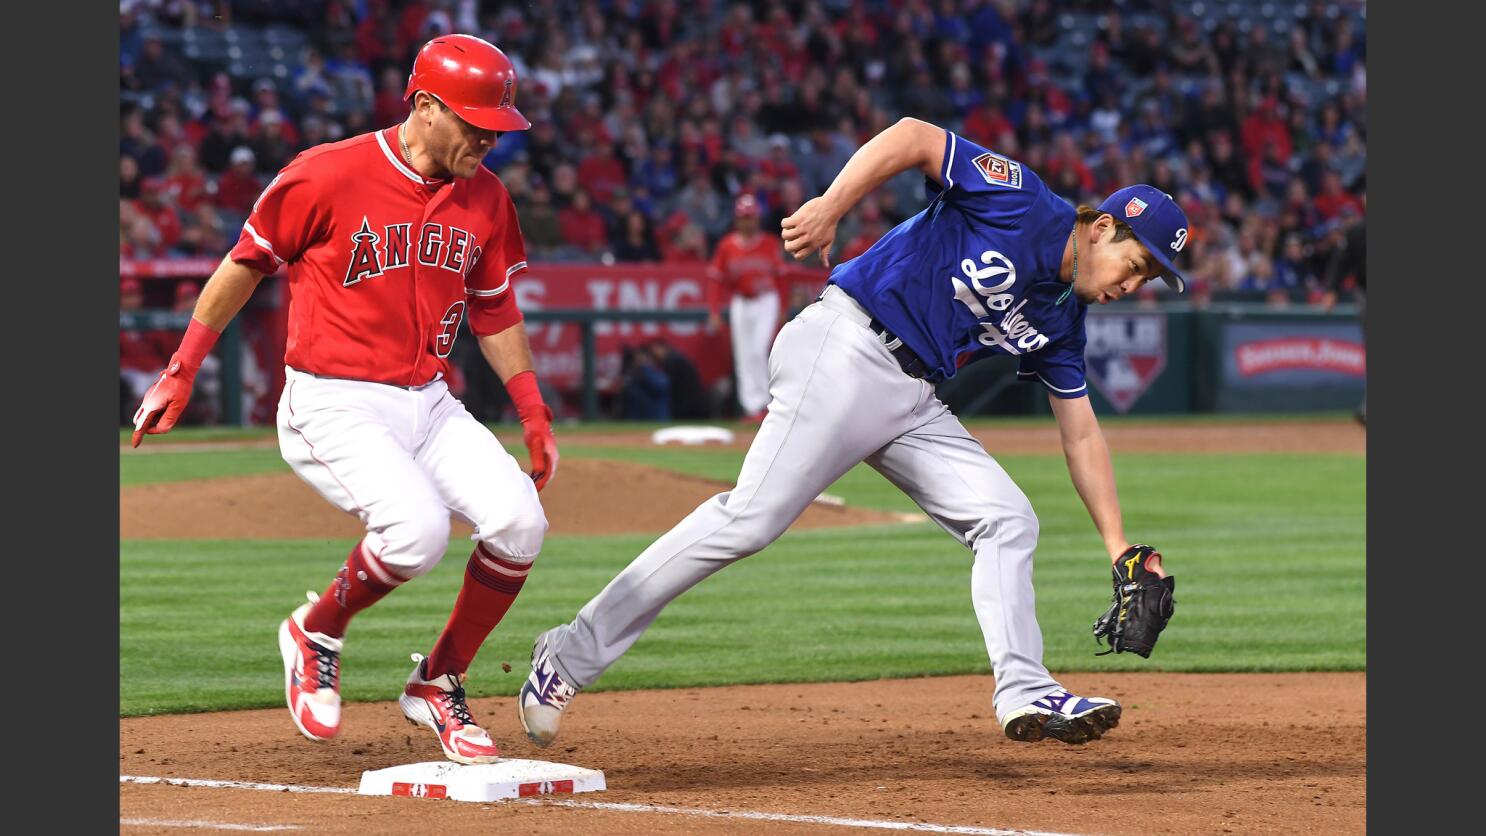 Angels second baseman Kinsler put on 10-day DL - Los Angeles Times